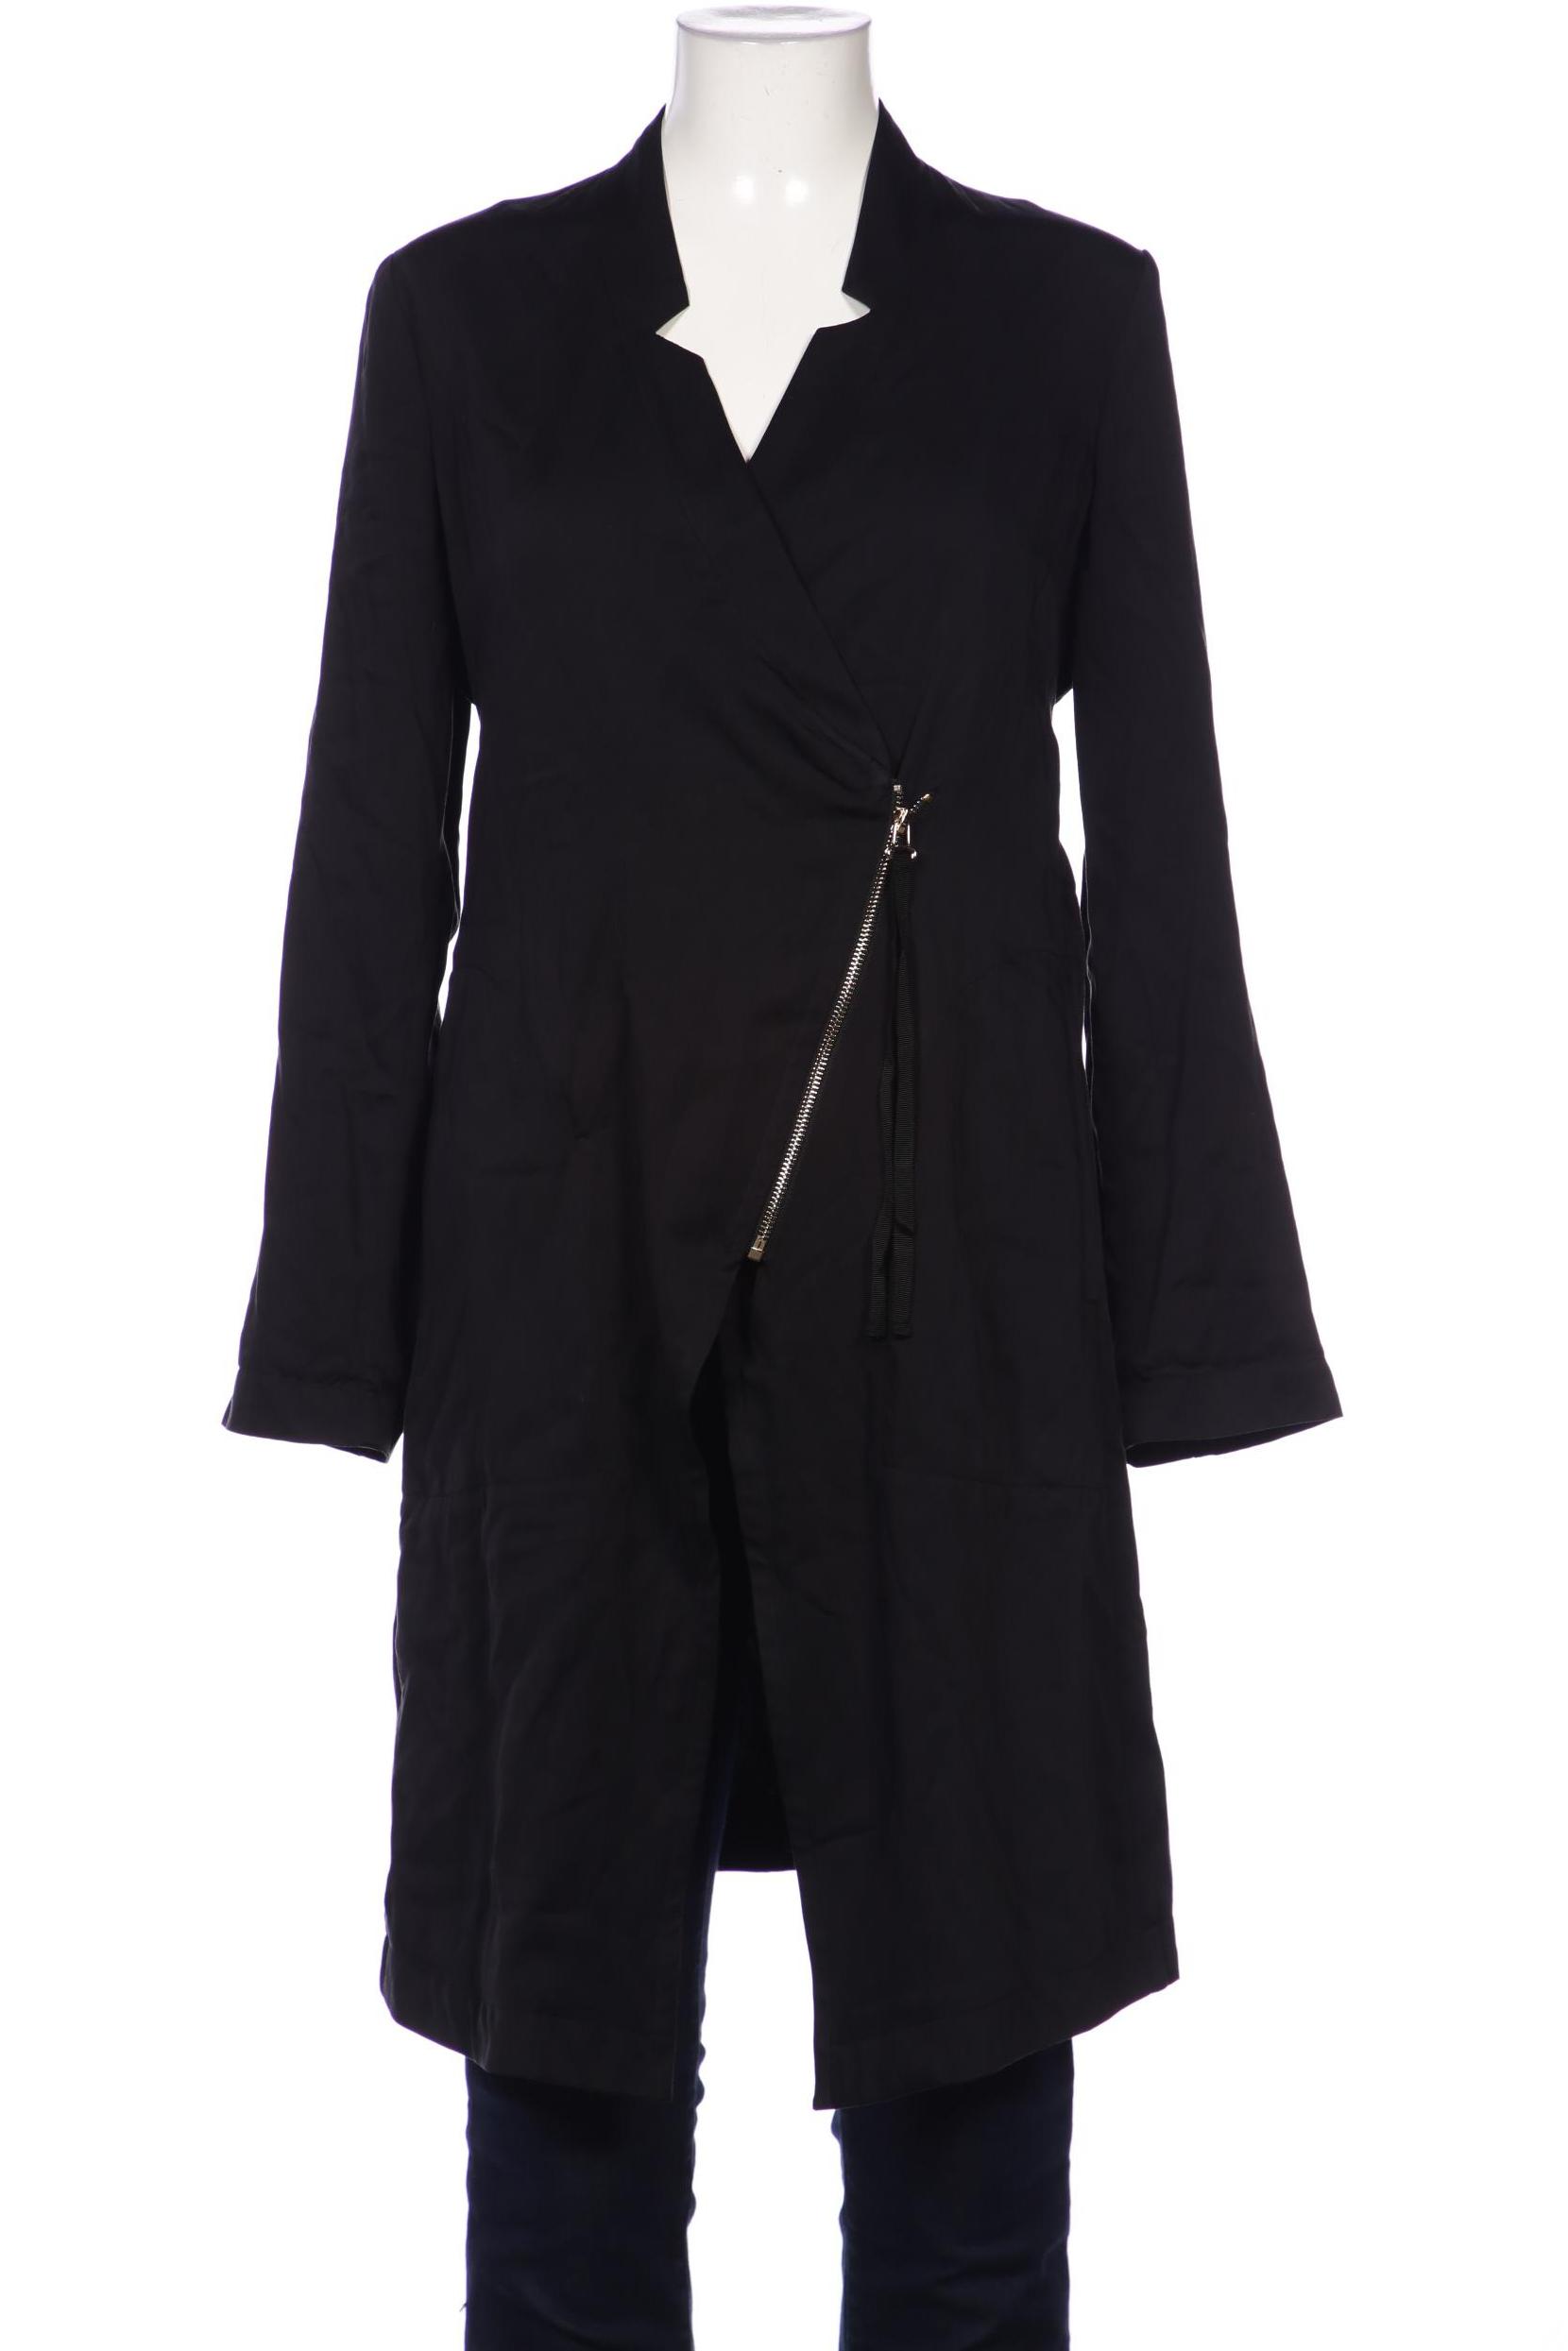 Twinset Damen Mantel, schwarz, Gr. 38 von TWINSET